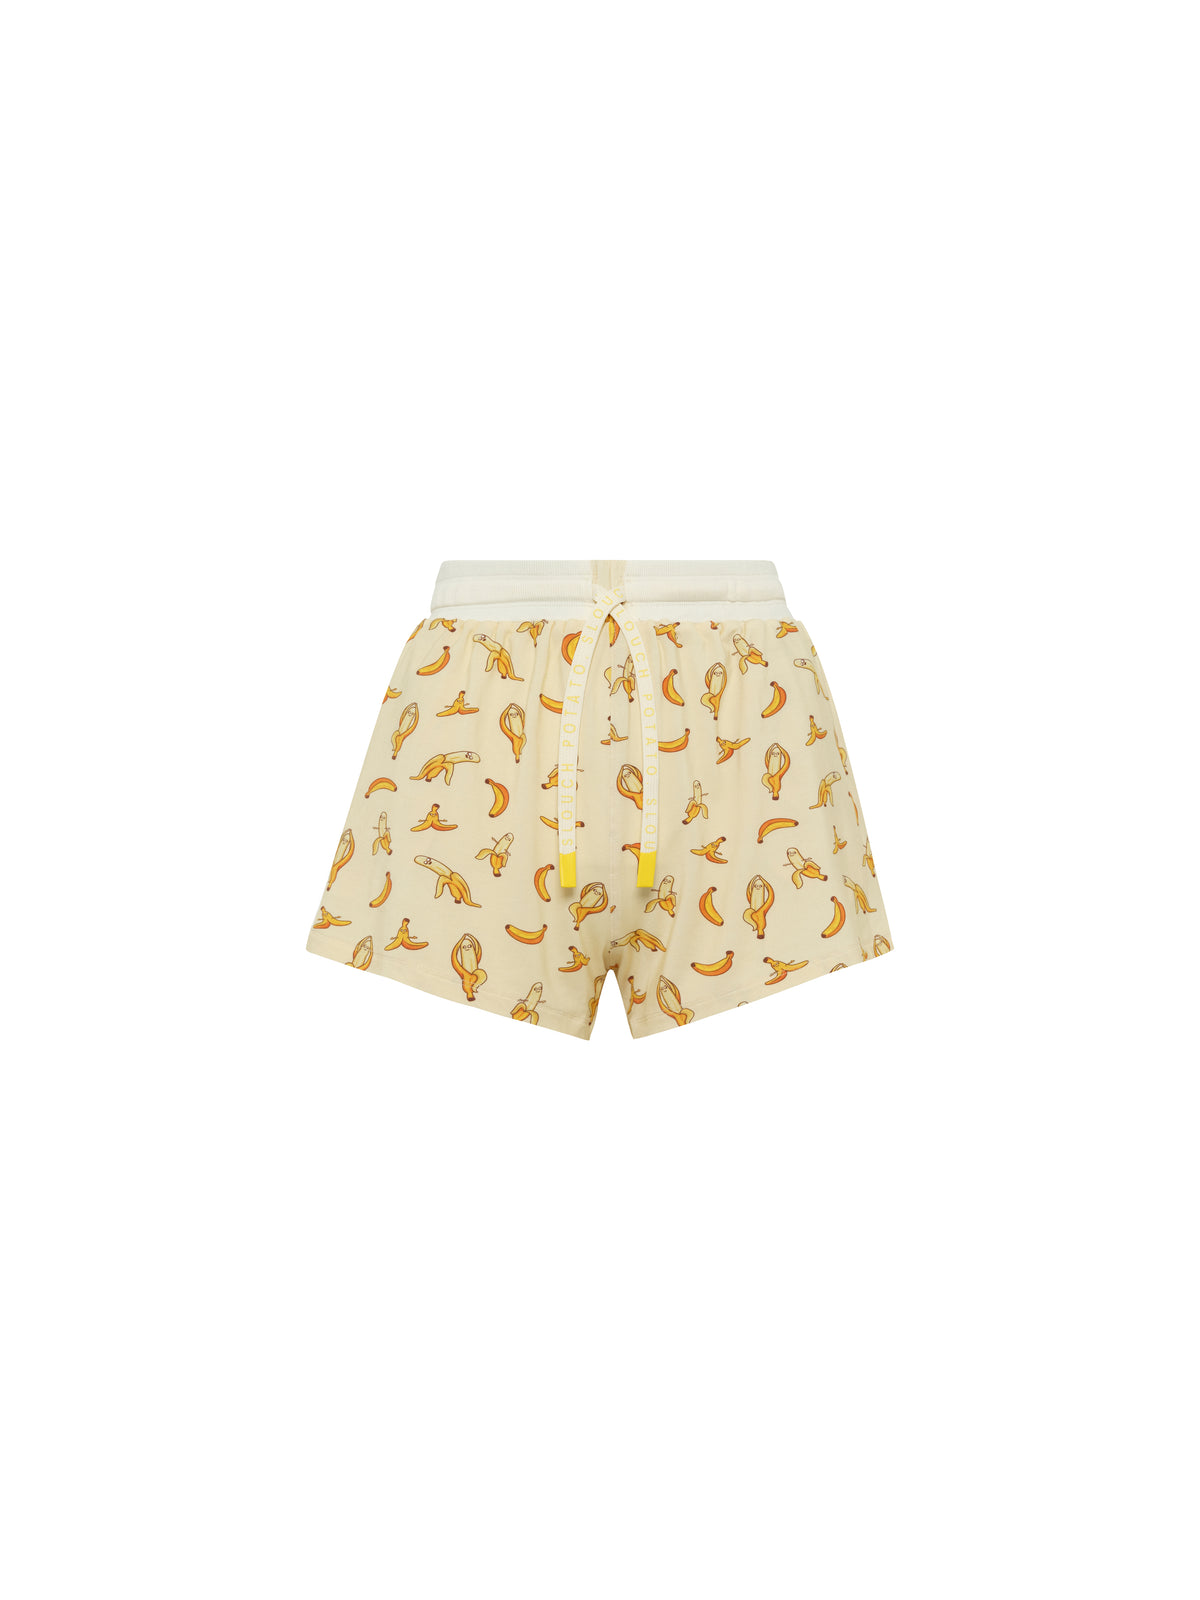 Snack Shorts- Banana